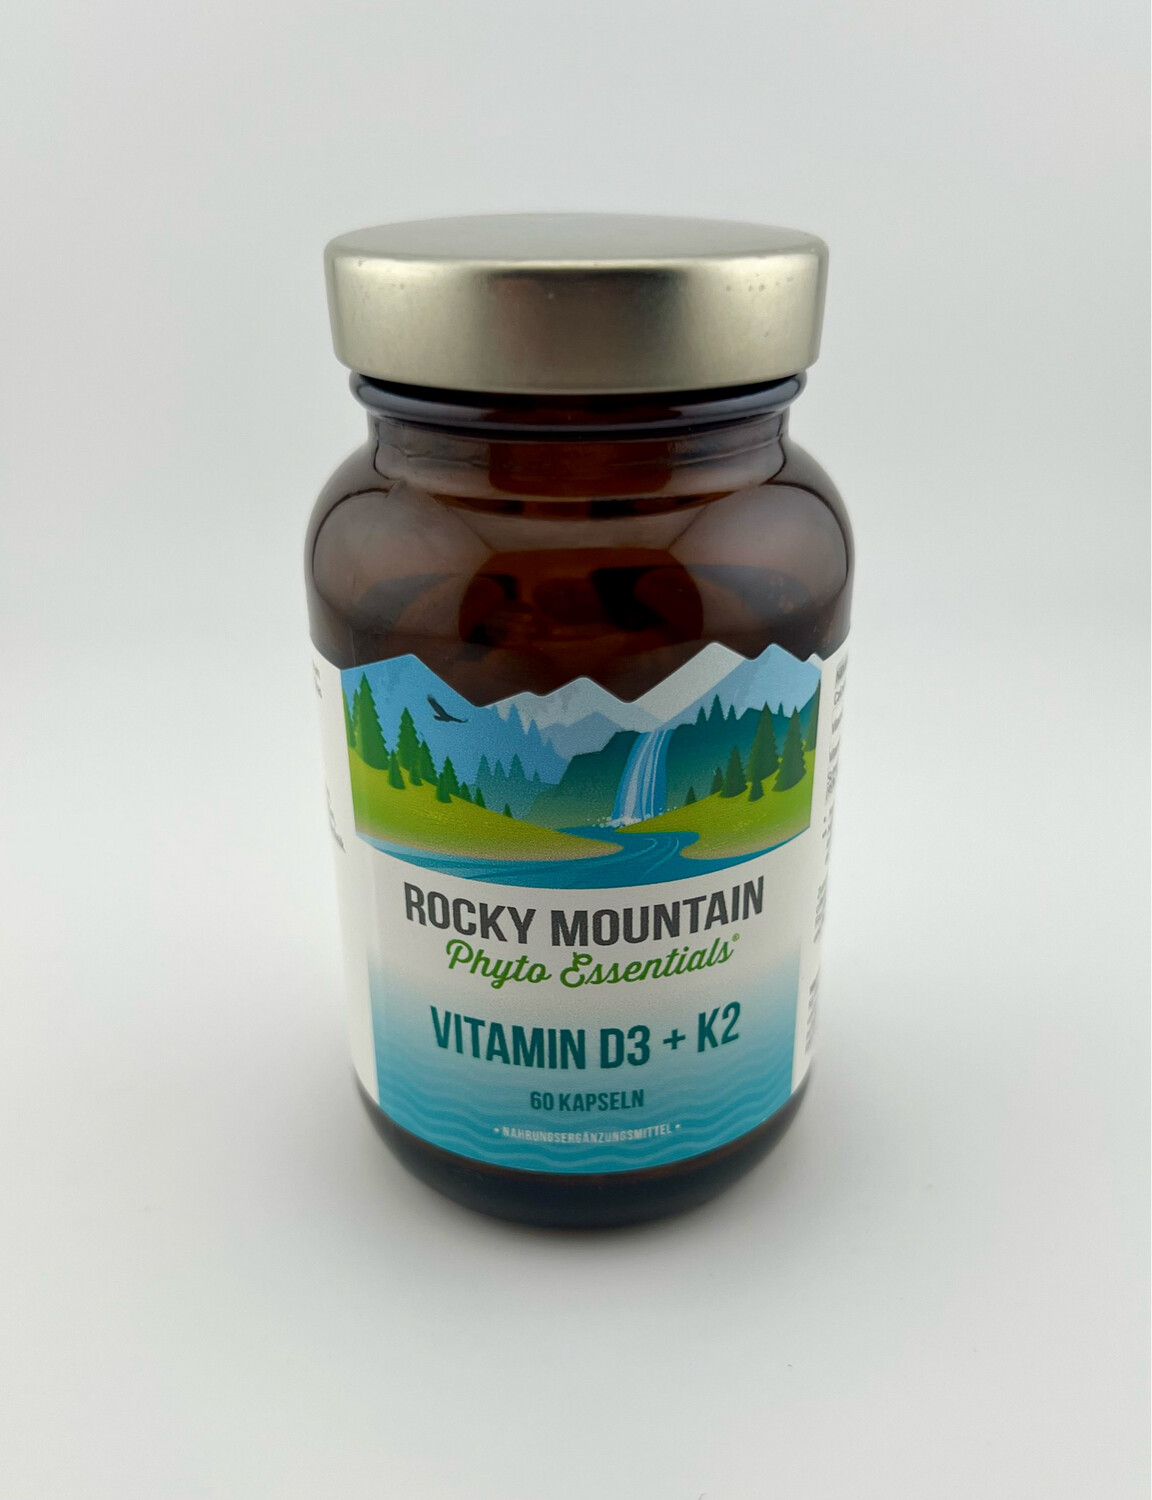 Rocky Mountain Vitamin D3 + K2 (60 Kapseln)